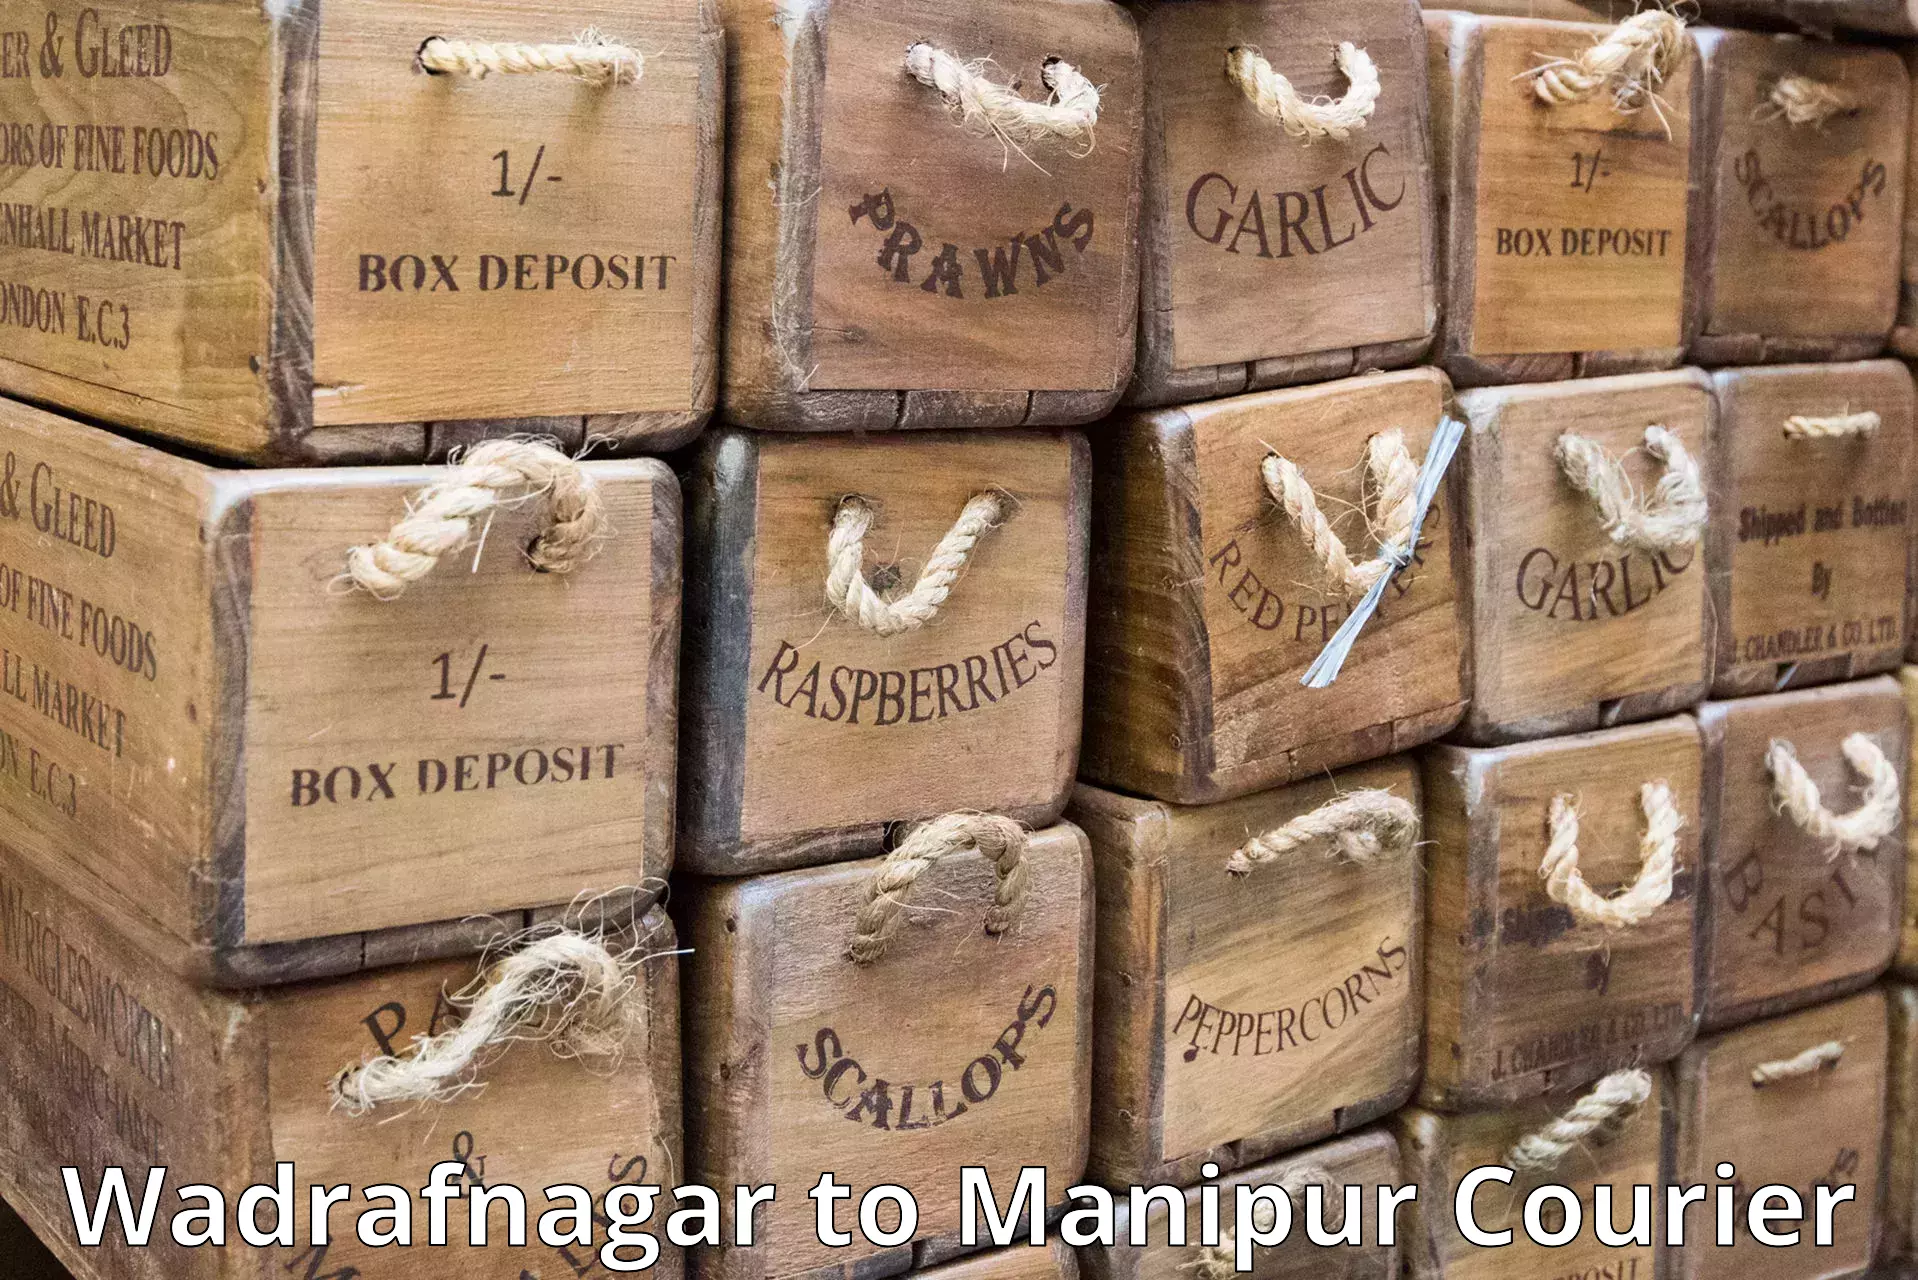 High-priority parcel service Wadrafnagar to Senapati